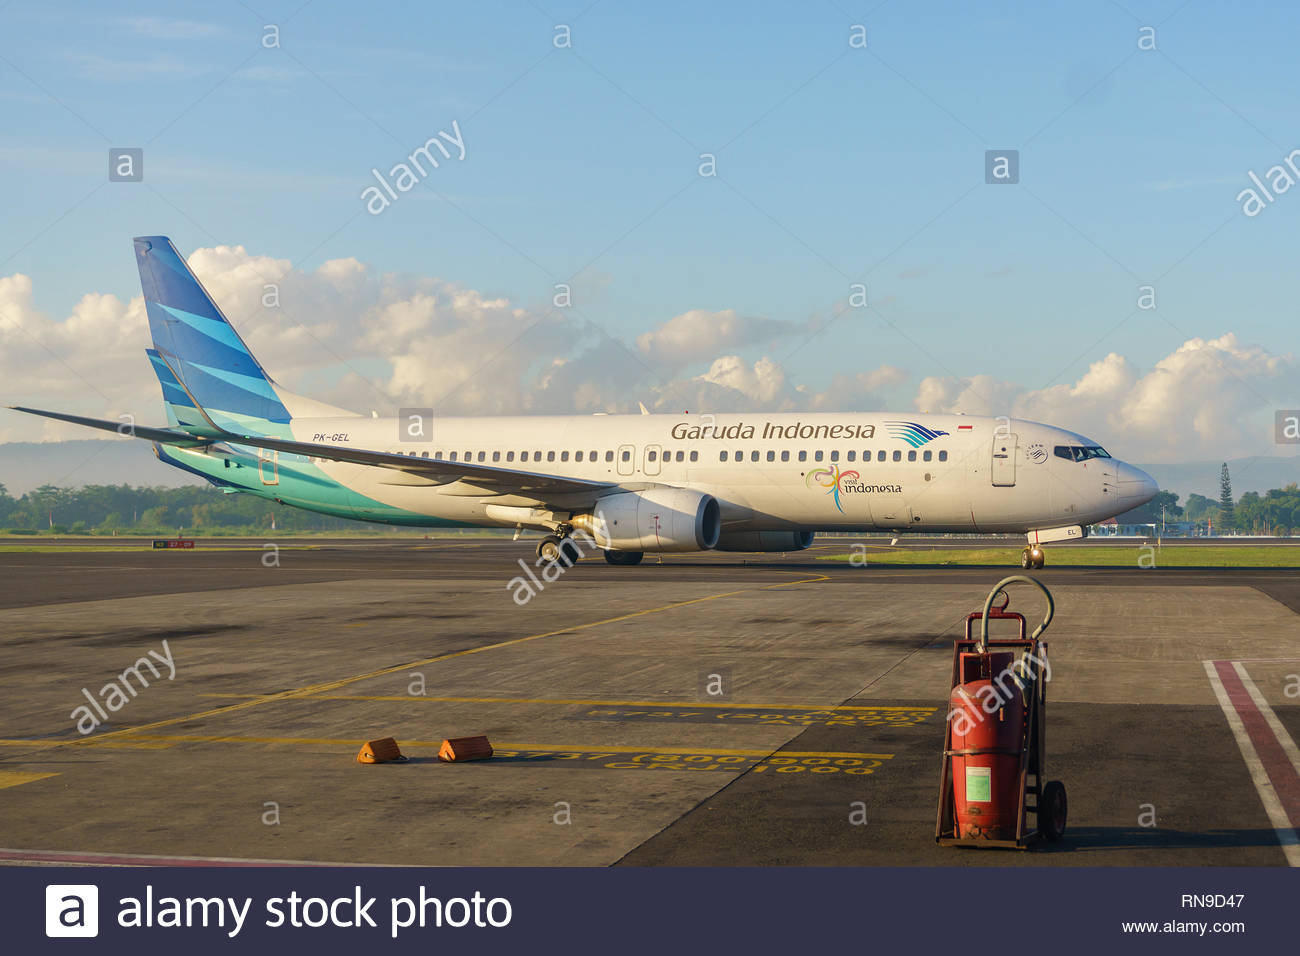 Image result for Yogyakarta Adisucipto International Airport, Indonesia